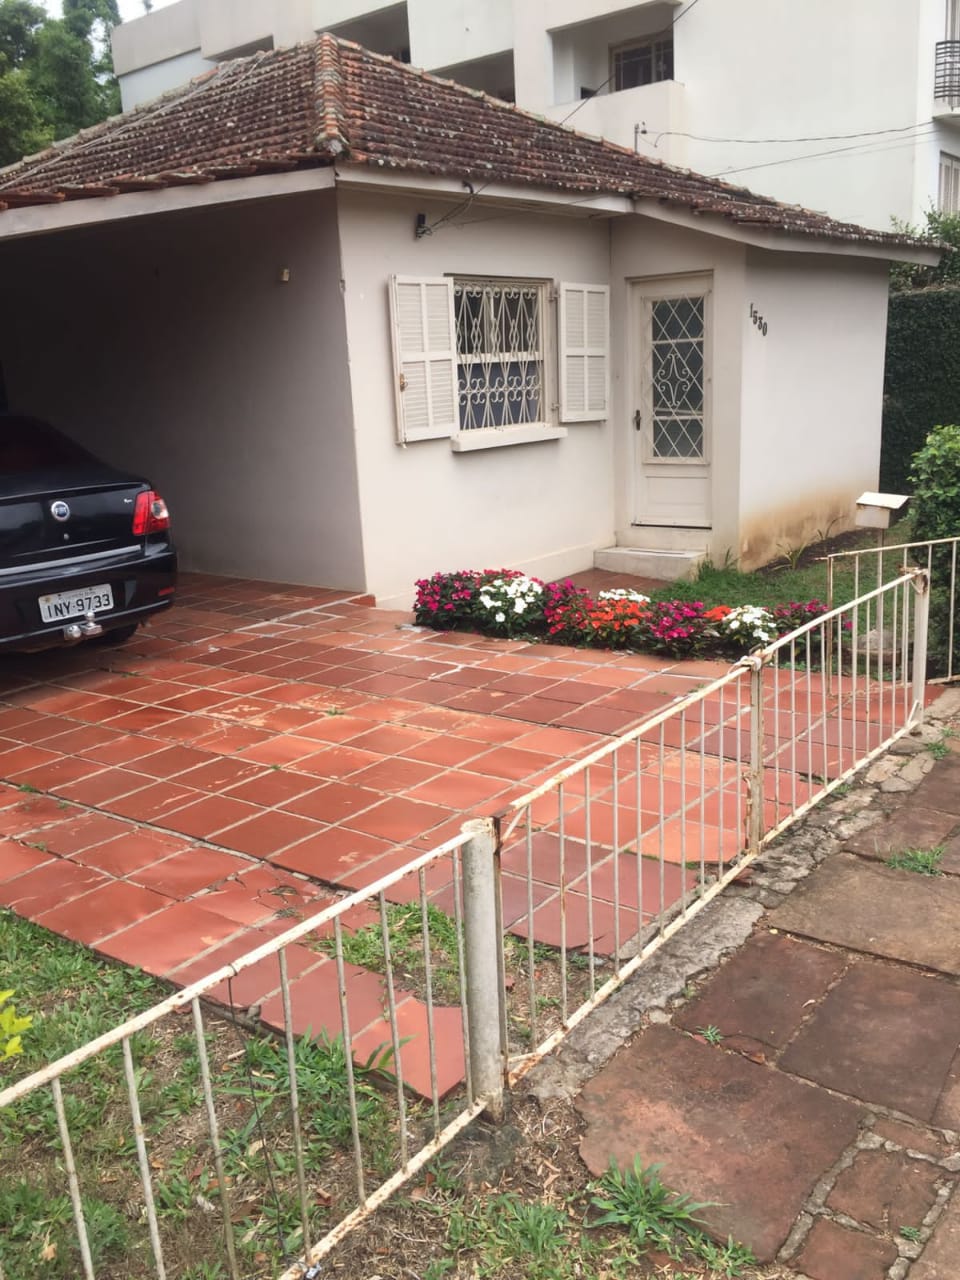 Casa 2 dormitórios, B. Santo Antônio – terreno 446 m2 – Cachoeira do Sul/RS – R$ 380.000,00